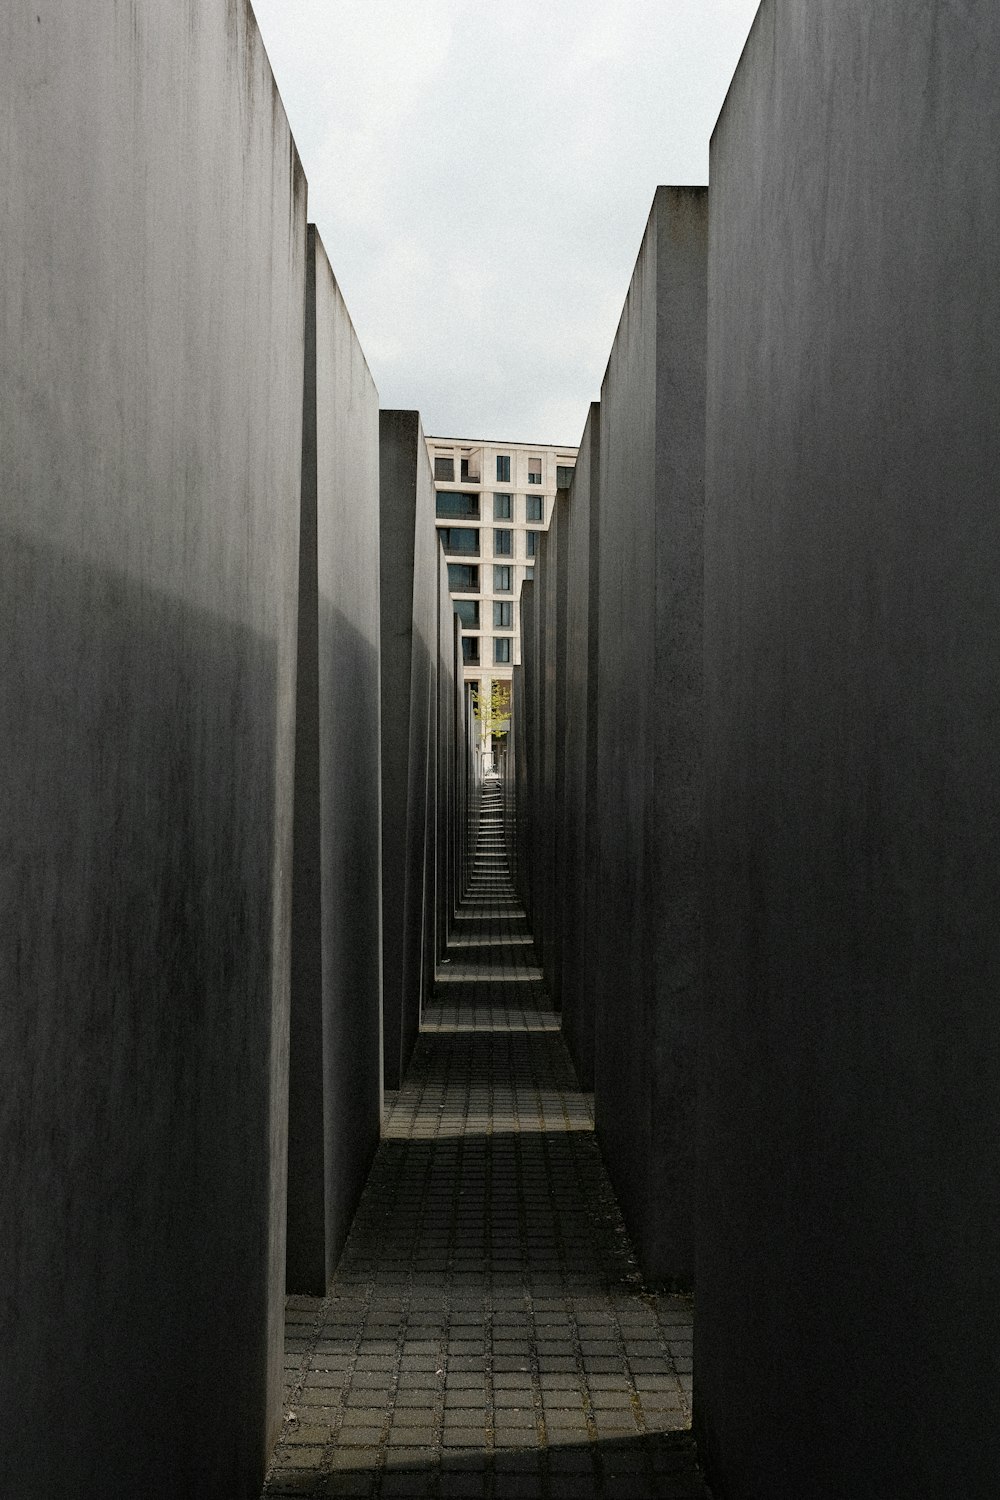 a long narrow walkway between two buildings